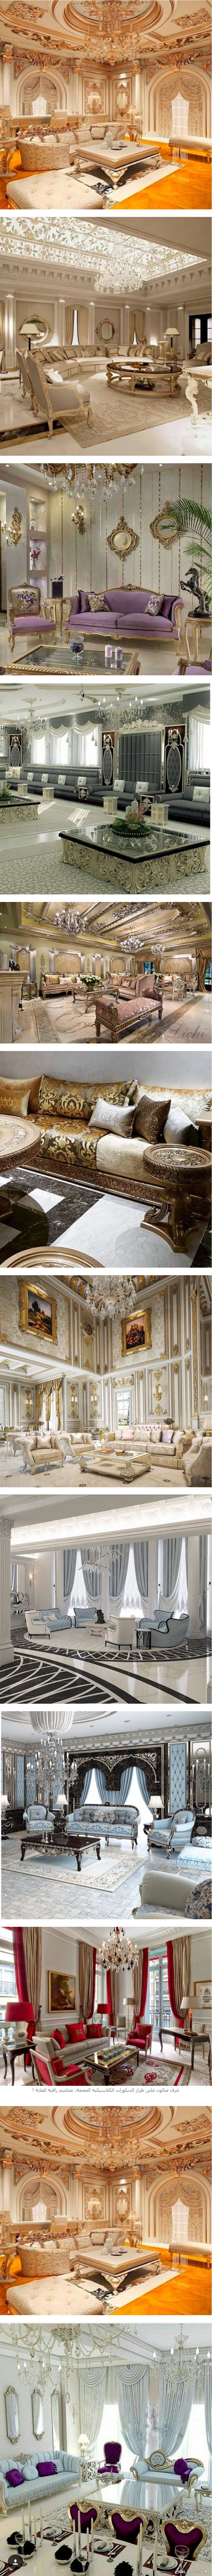 غرف صالون على طراز الديكورات الكلاسيكية الفخمة، أجمل الصالونات الكلاسيكية ت